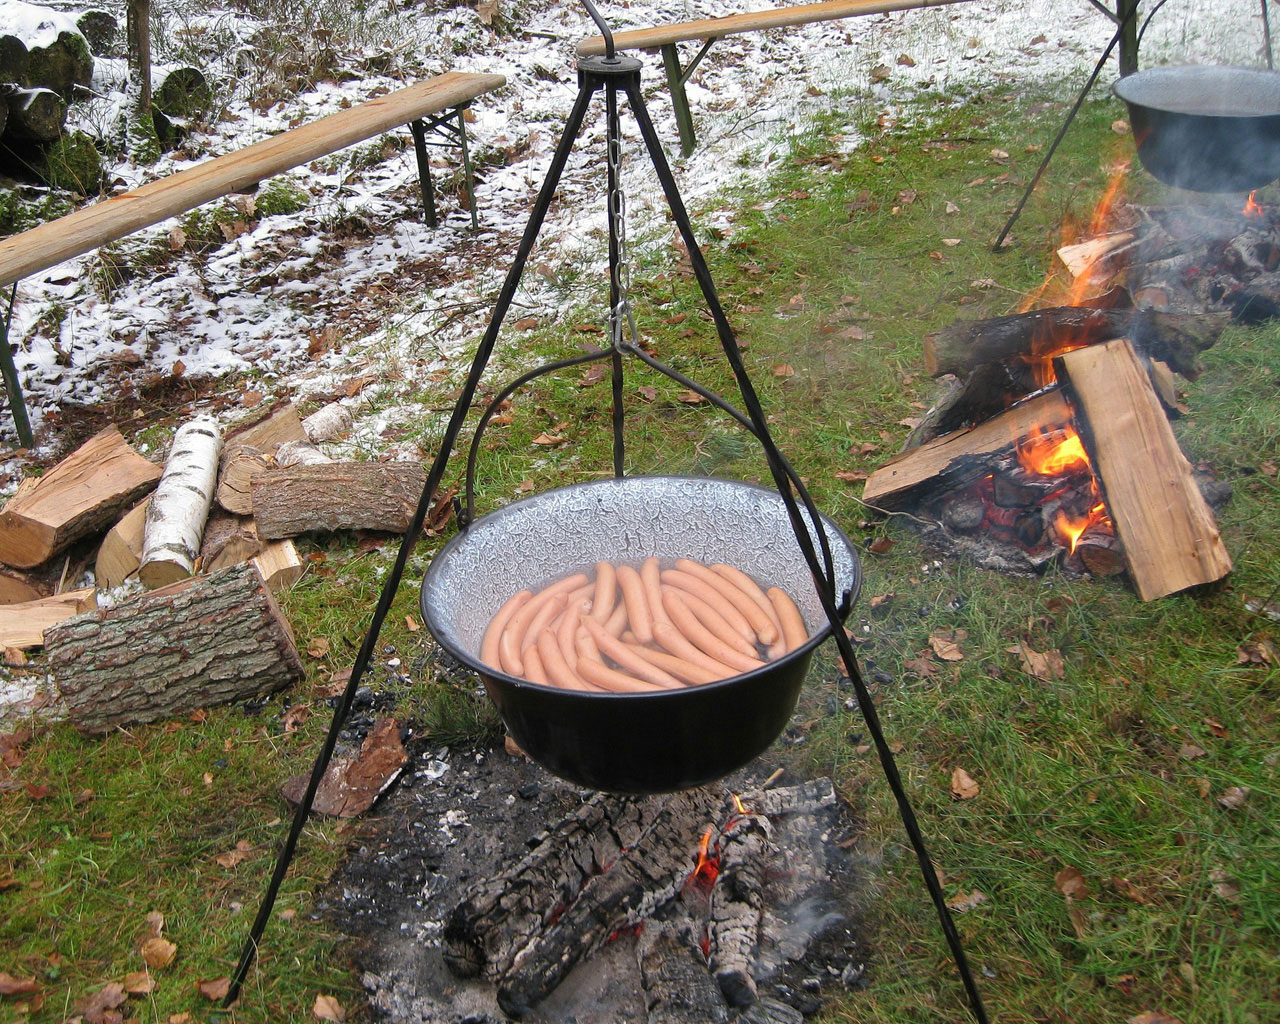 Slika prikazuje kuharski kotlić na tri noge